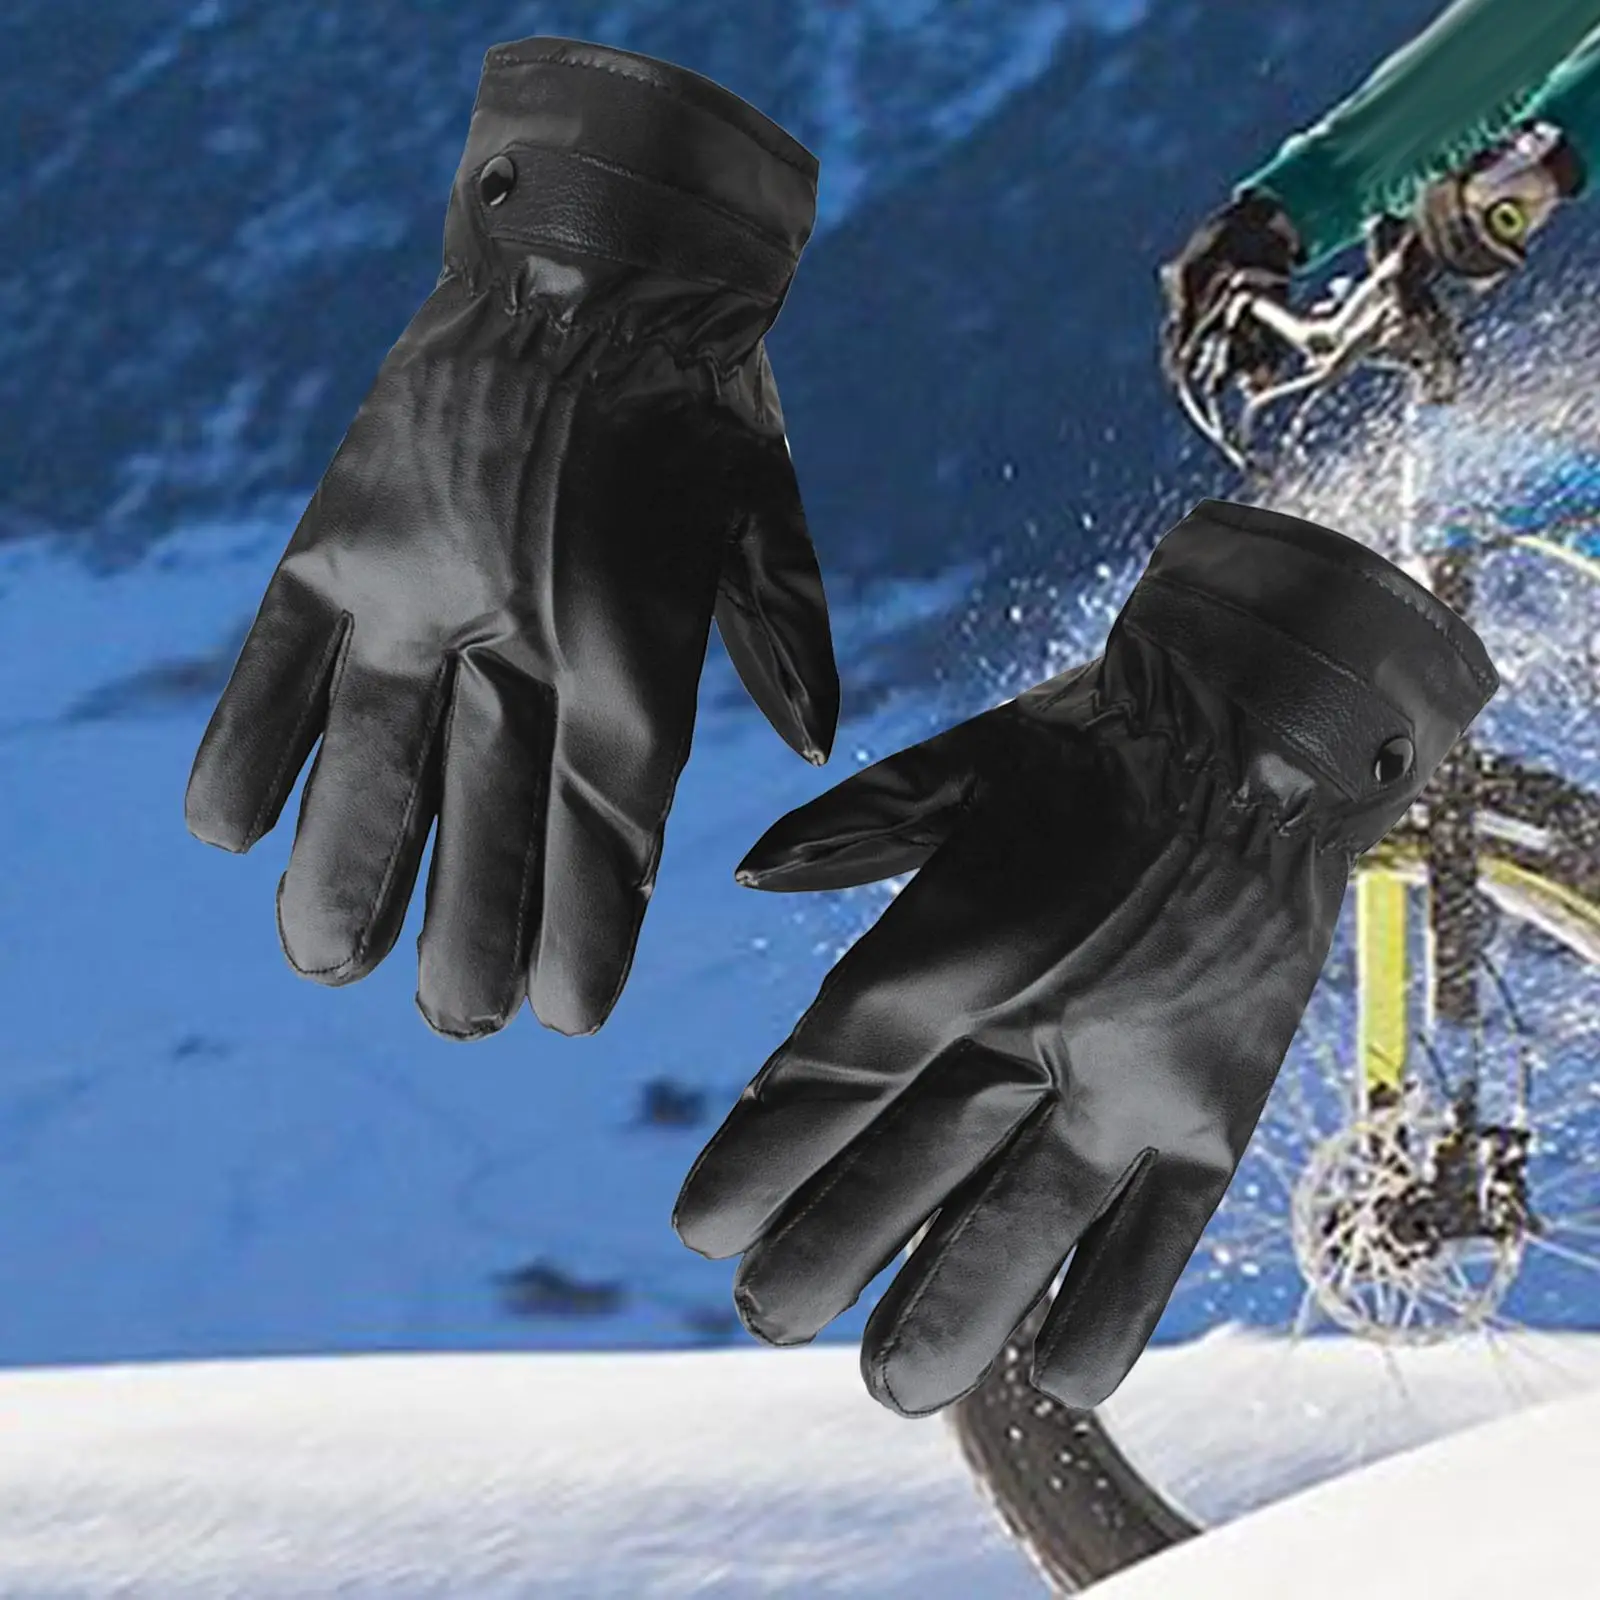 Мужские зимние перчатки Ветрозащитные для холодной погоды Флисовая подкладка с сенсорным экраном Теплые варежки для бега, мотоциклетного спорта, катания на коньках, катания на лыжах, вождения2